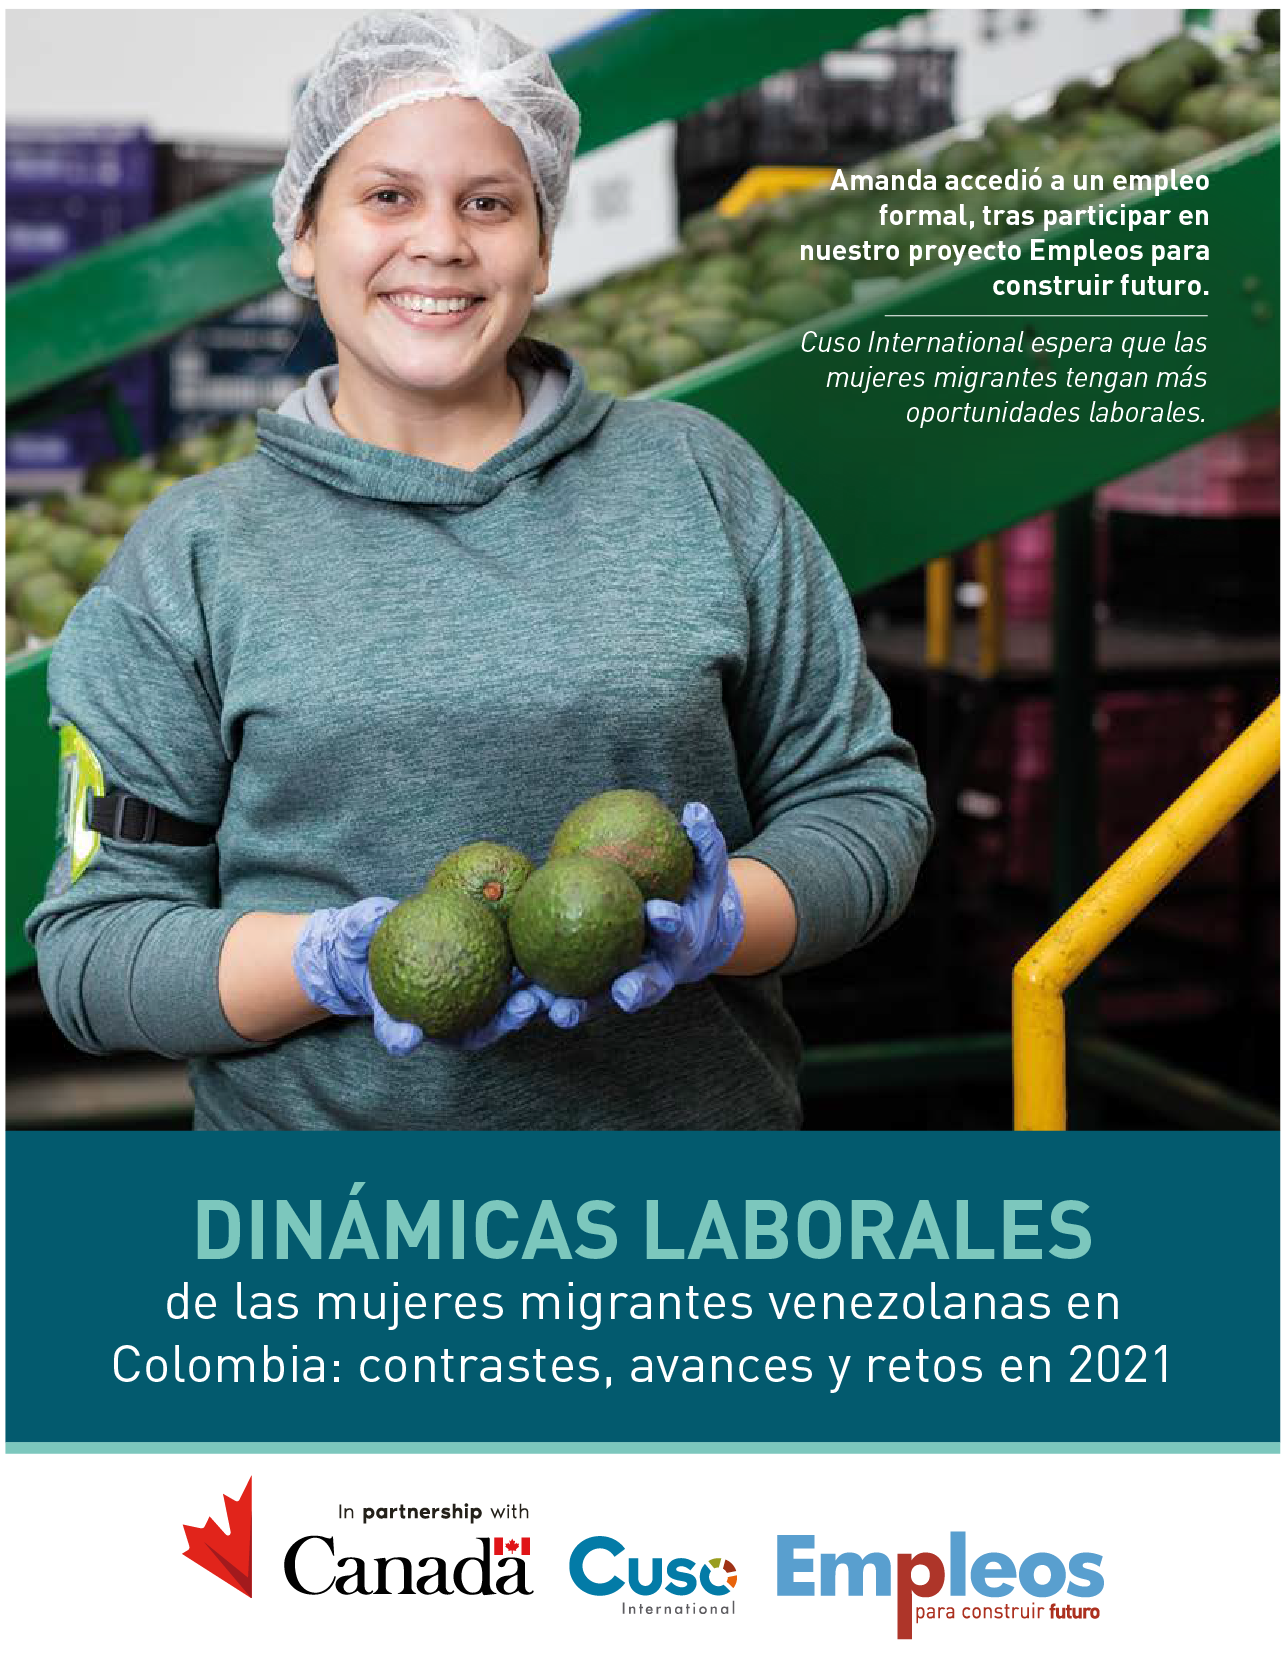 Dinámicas laborales de las mujeres migrantes venezolanas en Colombia: contrastes, avances y retos en 2021